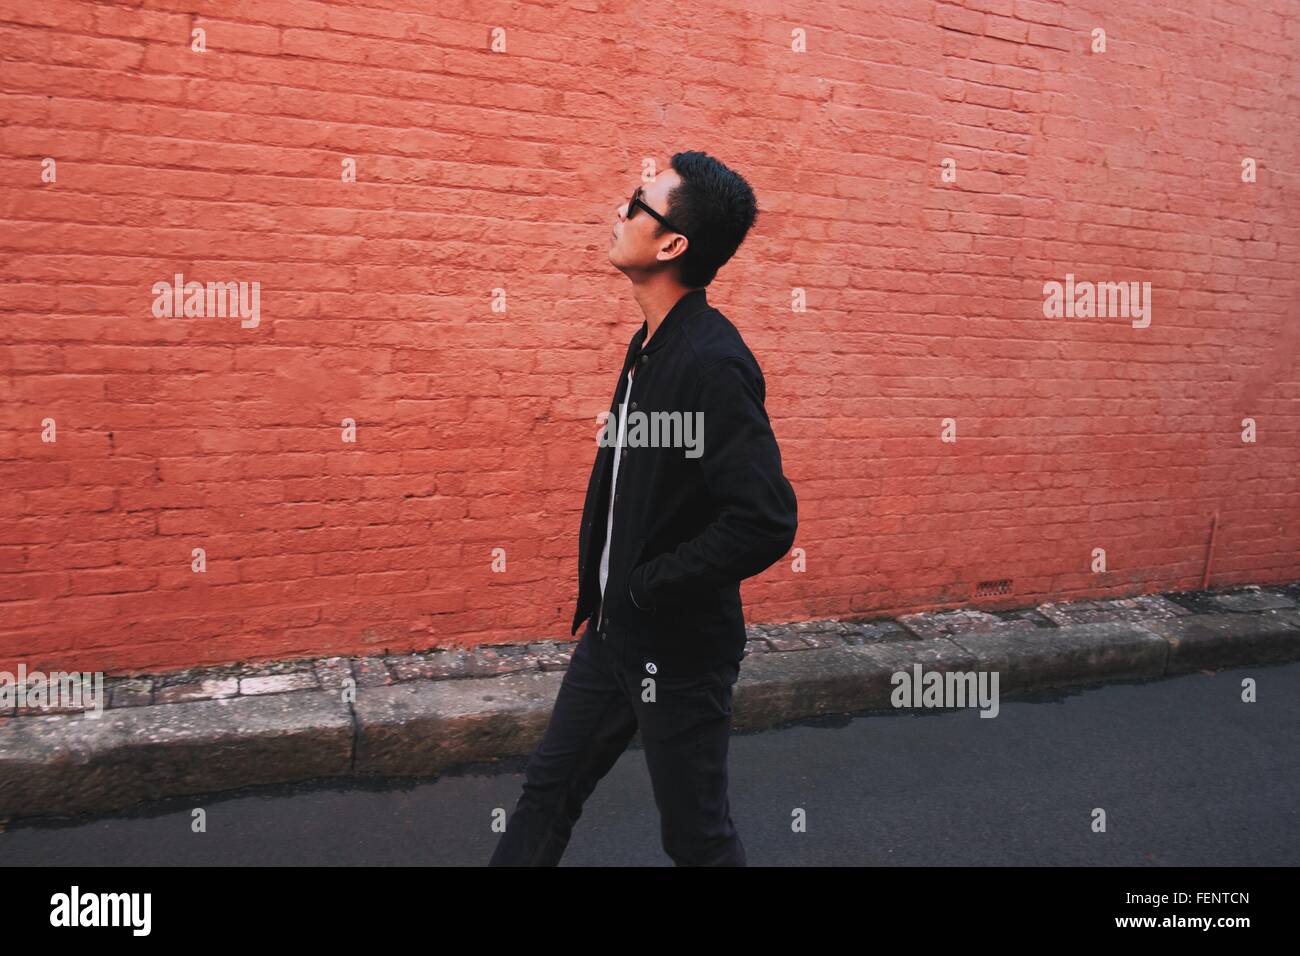 Seitenansicht des modischen jungen Mann gehen auf der Straße gegen roten Backsteinmauer Stockfoto